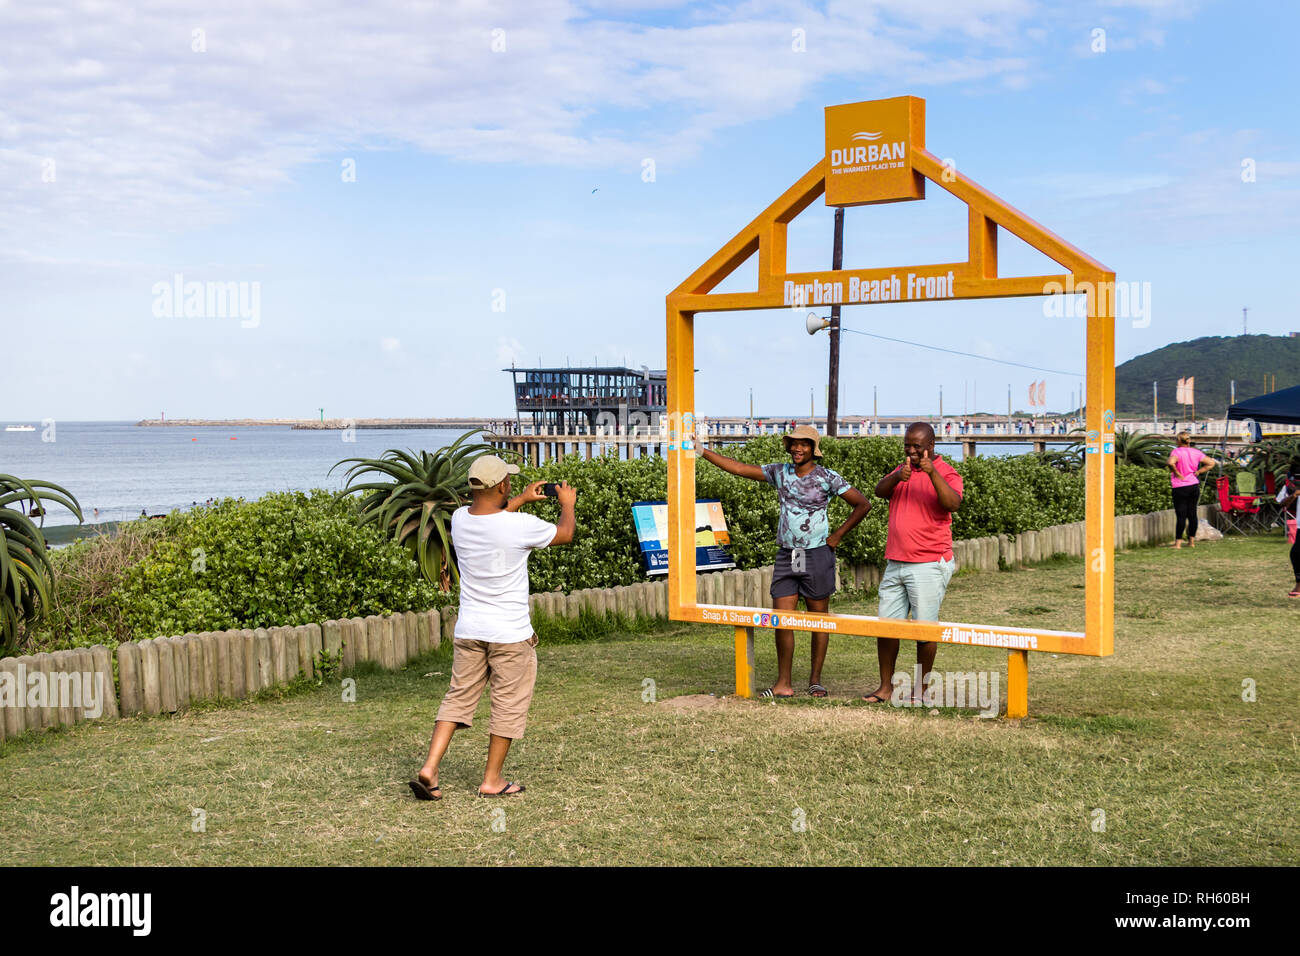 Durban, Südafrika - Januar 6th, 2019: Leute die Bilder auf einem großen Rahmen am Strand von Durban, Südafrika. Stockfoto